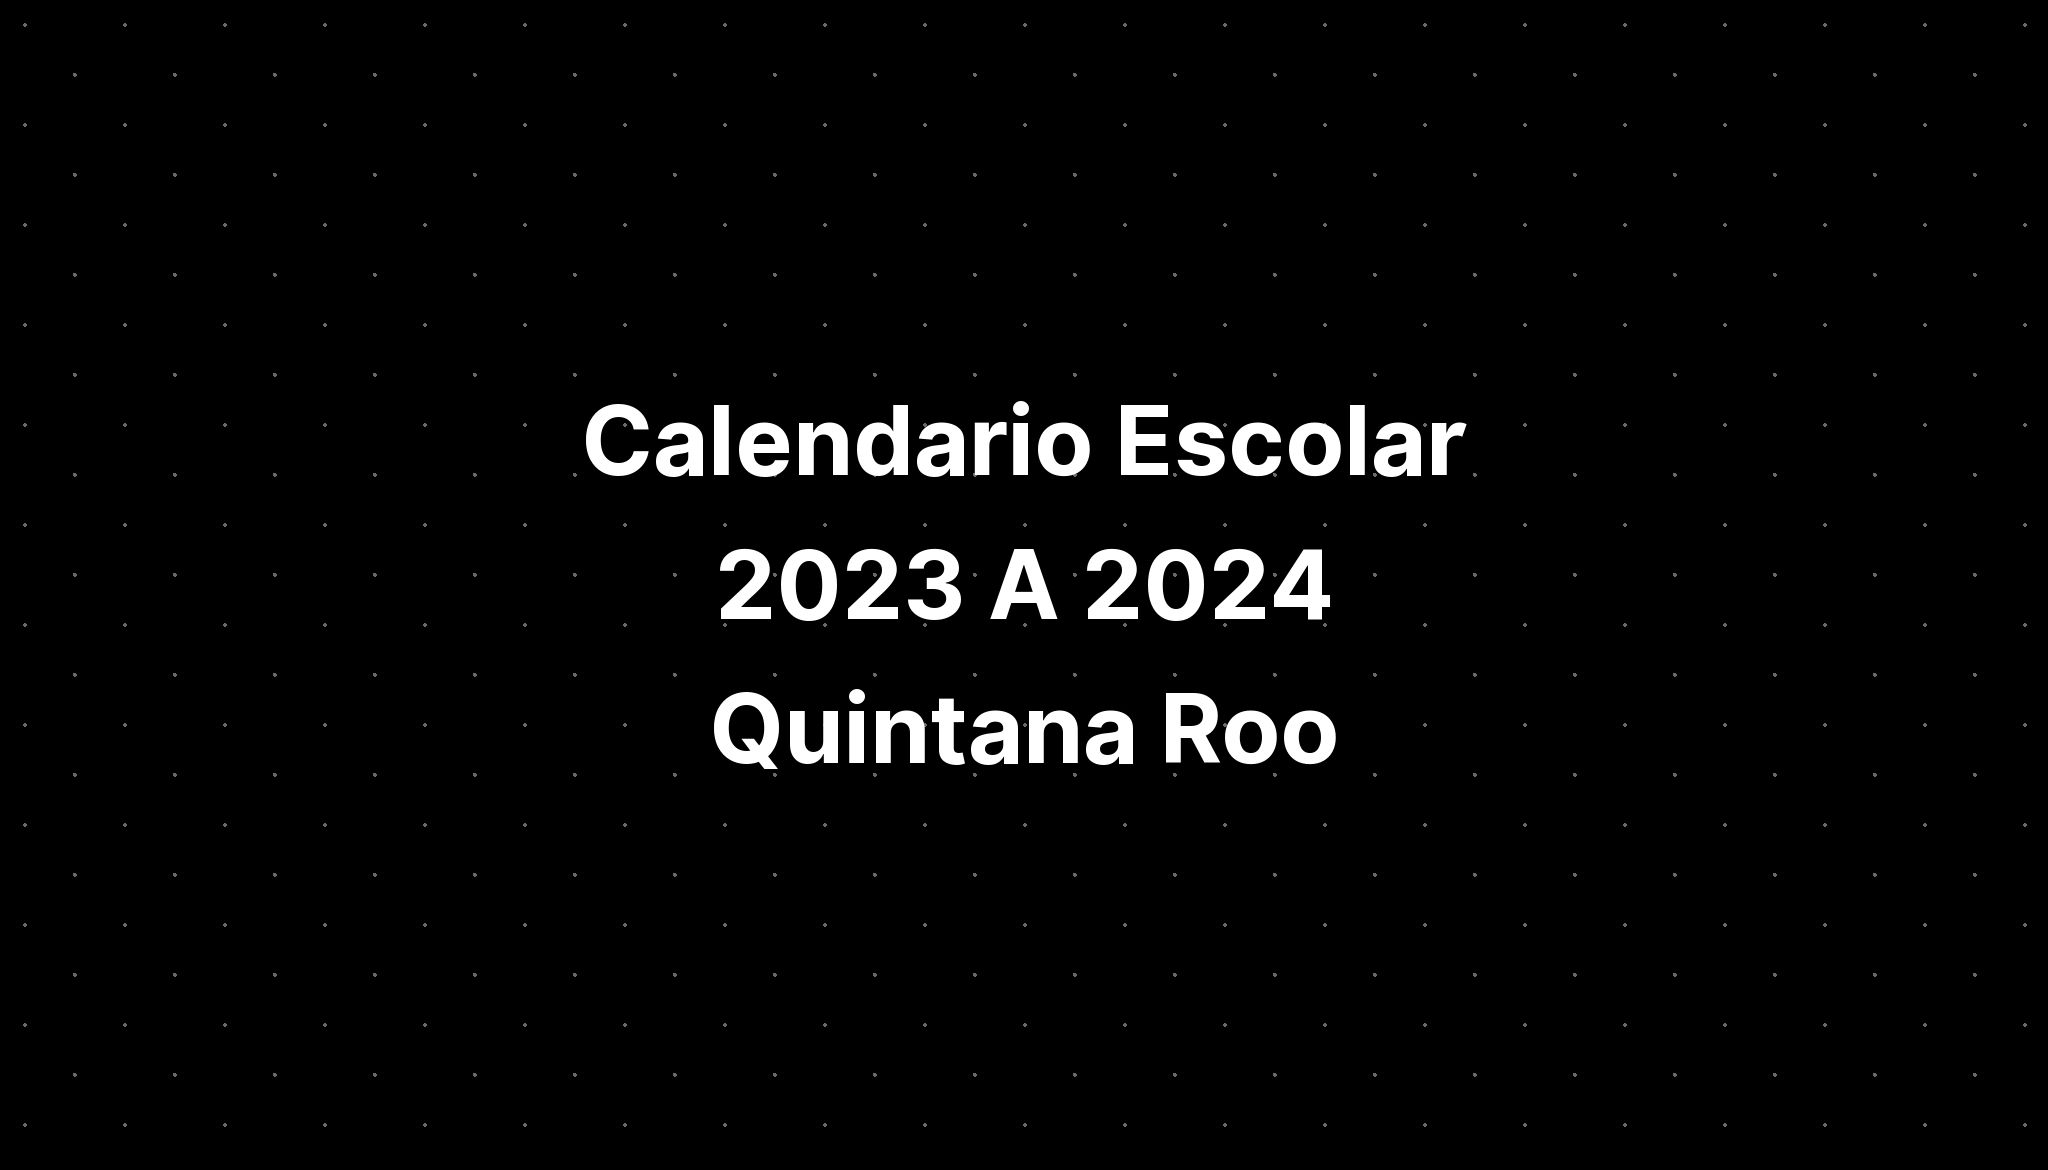 Calendario Escolar 2023 A 2024 Quintana Roo IMAGESEE